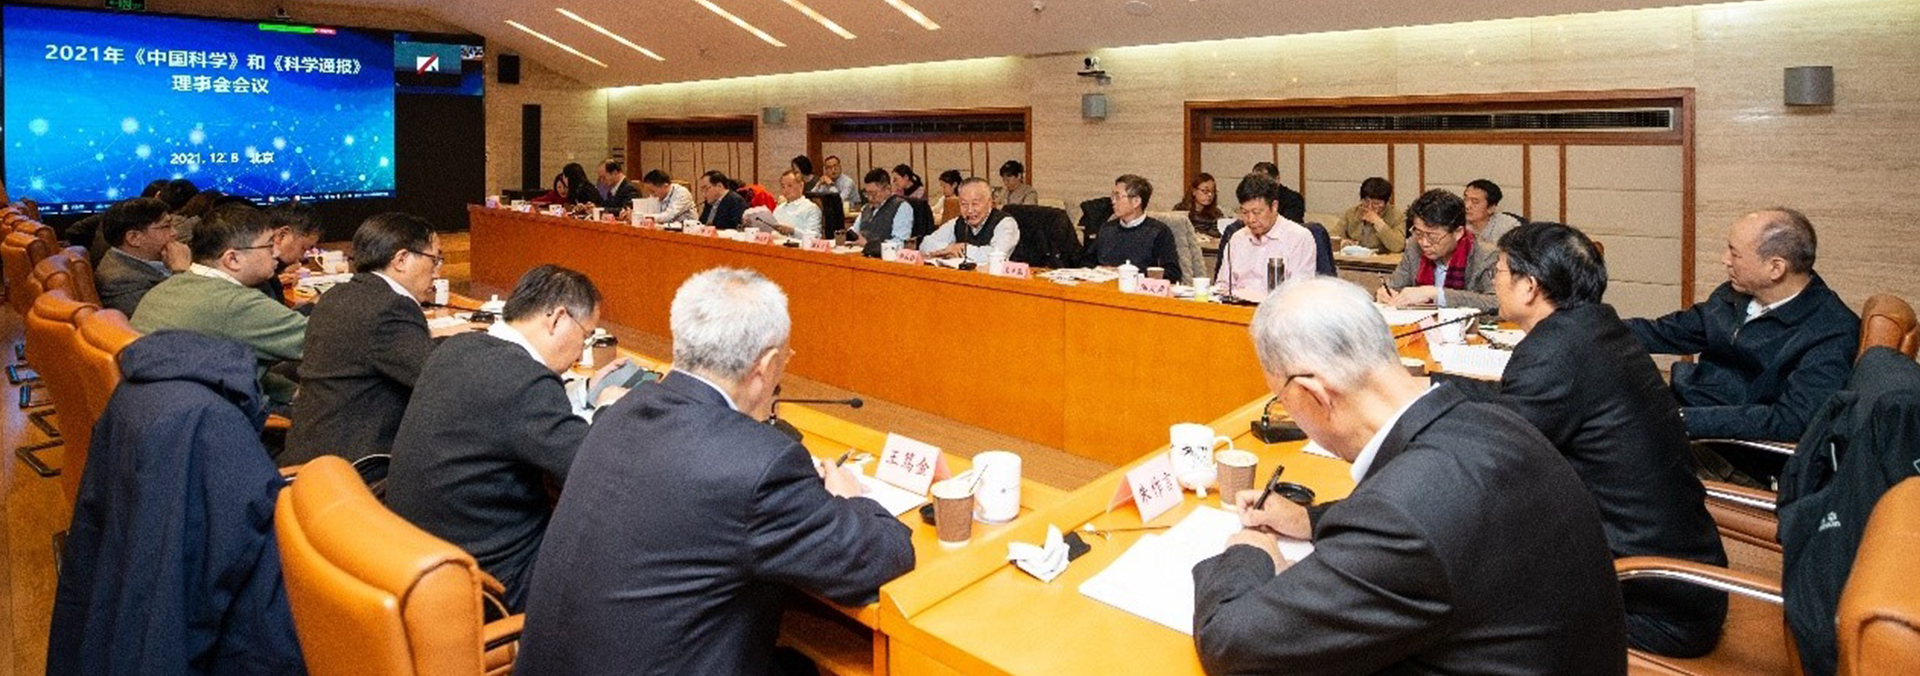 2021年《中国科学》和《科学通报》理事会会议在京召开